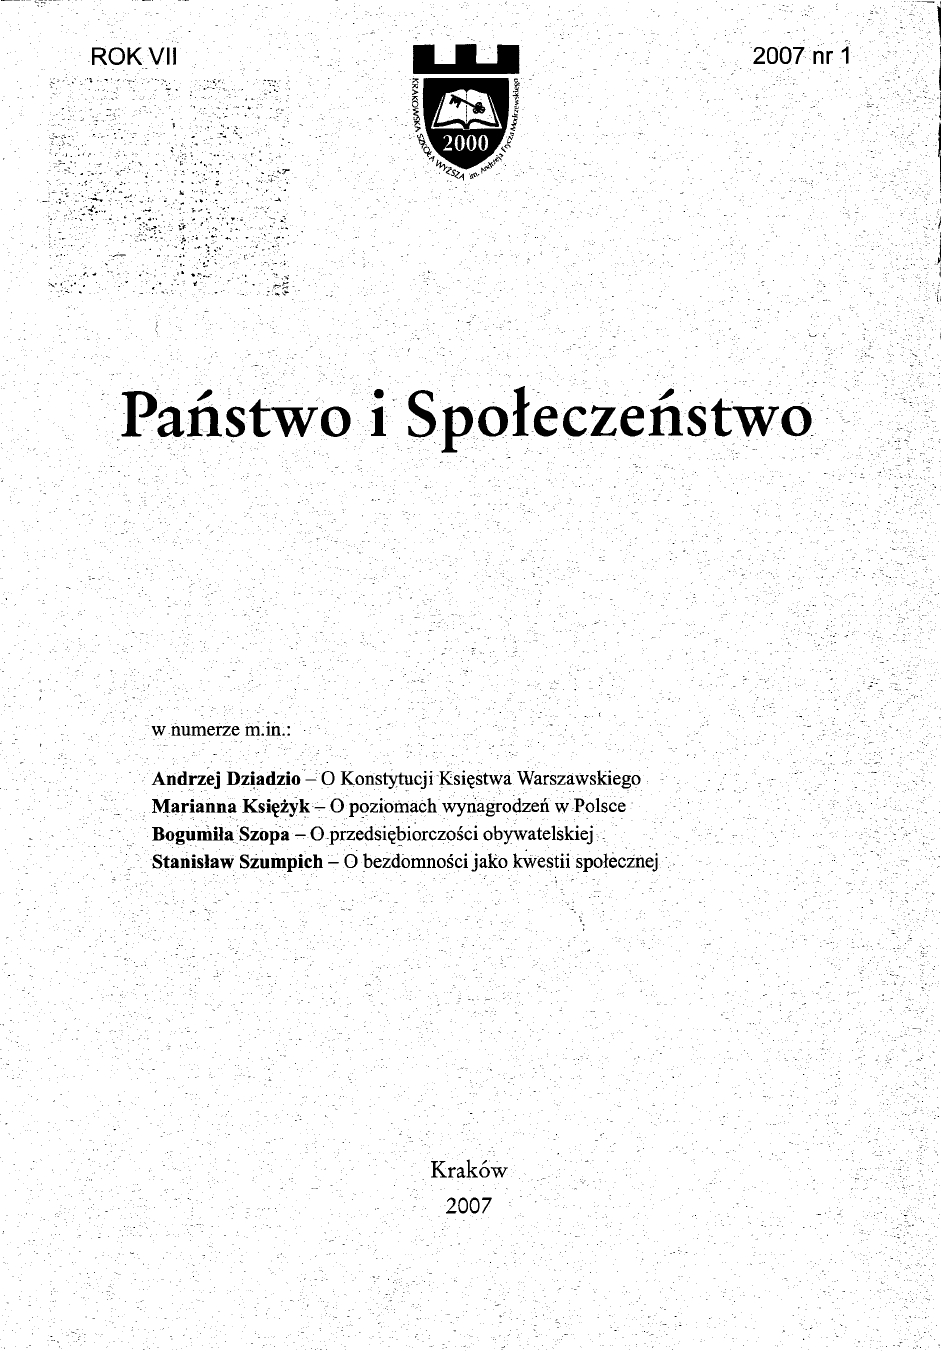 Współdziałanie państwa i Kościoła katolickiego w łagodzeniu problemu bezrobocia w Polsce po 1989 roku w świetle zasad katolickiej nauki społecznej (zarys problemu)